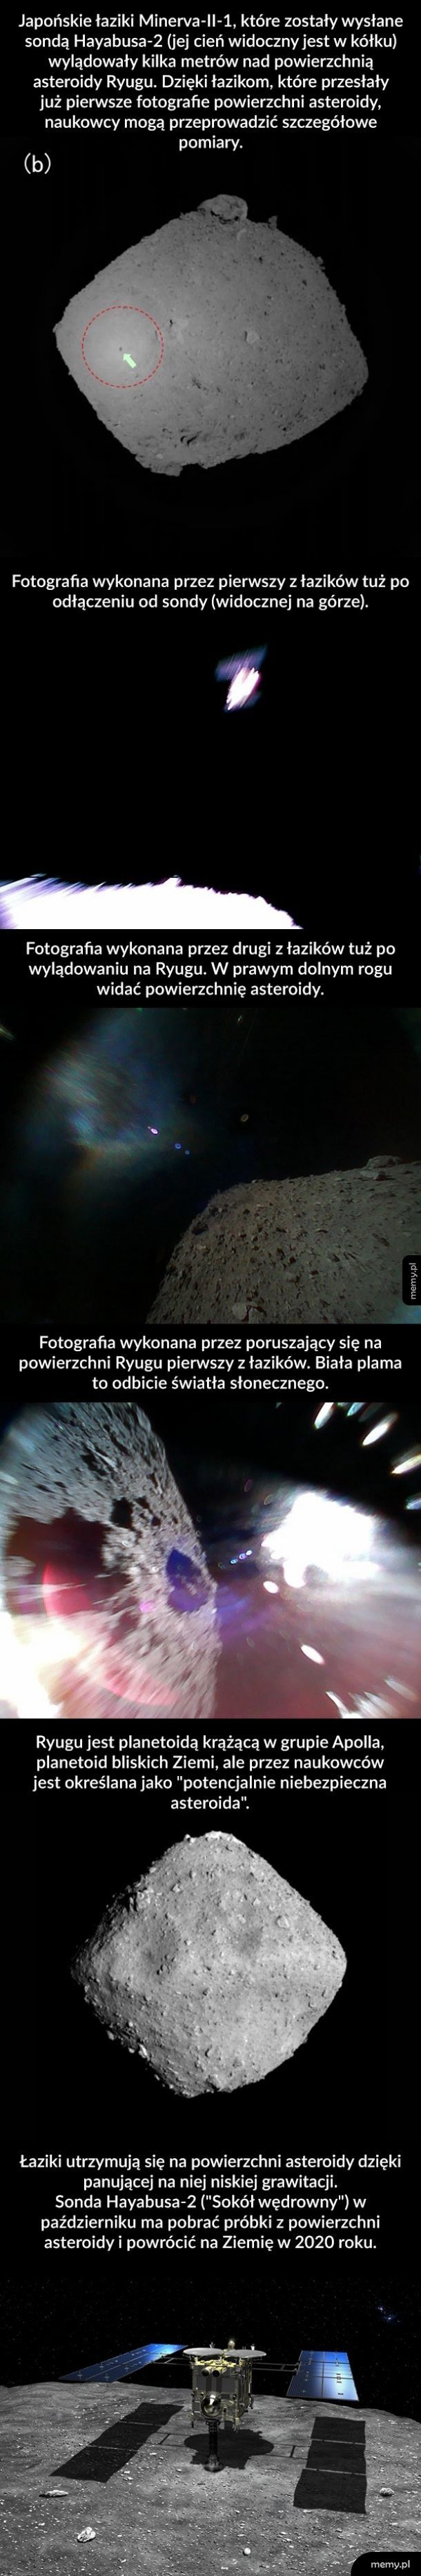 Pierwsze zdjęcia z powierzchni asteroidy